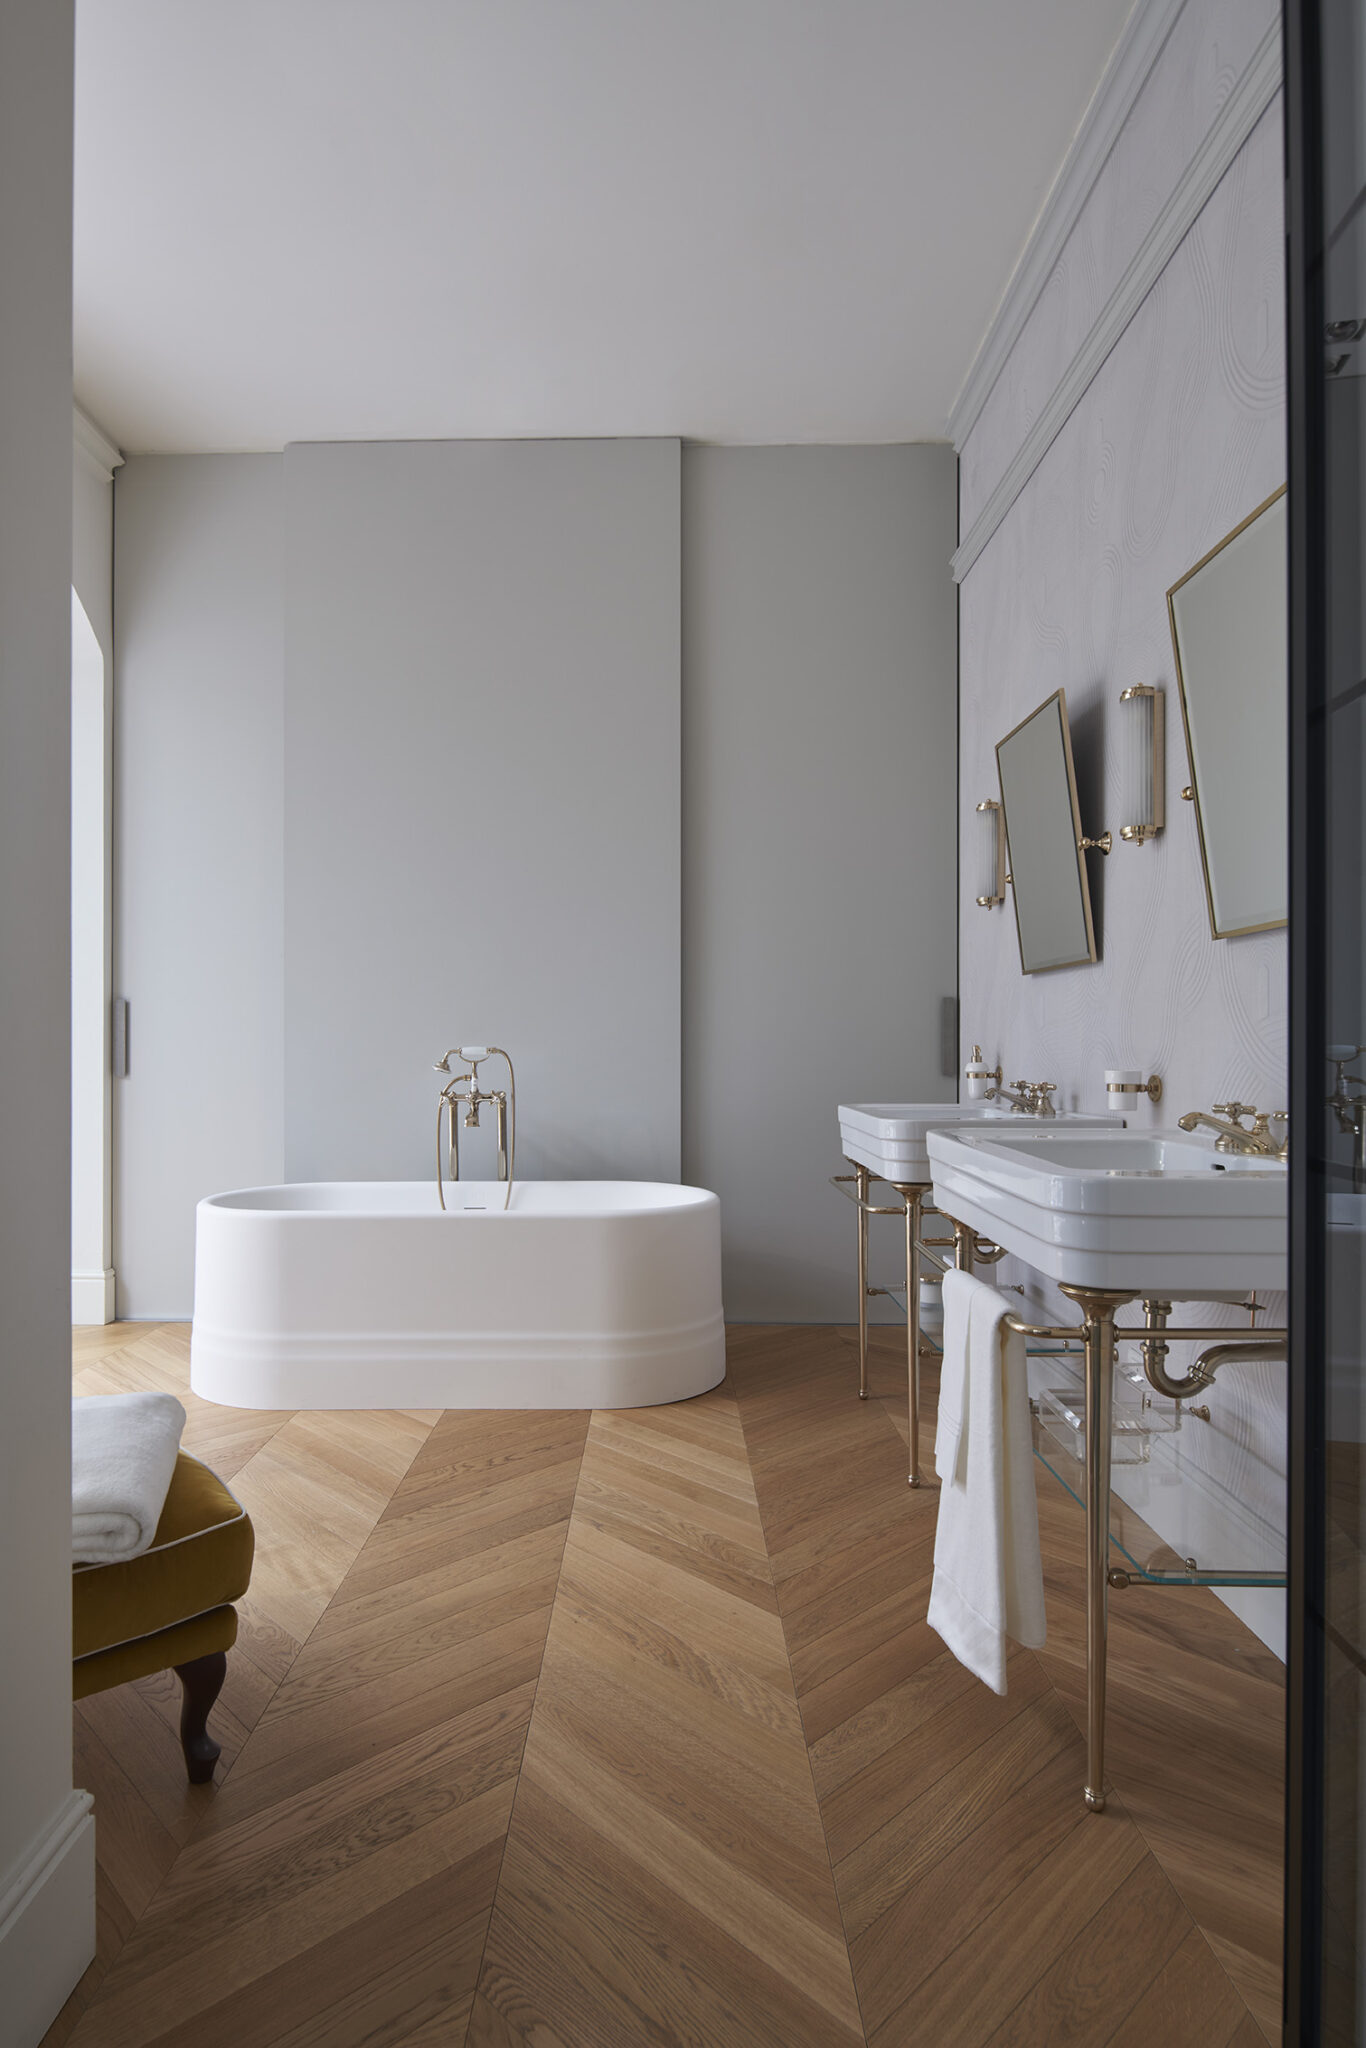 Devon&Devon inspirerer seg fra klassisk europeisk og viktoriansk design og kombinerer det med moderne innovasjon. Deres baderomskolleksjoner er preget av en elegant blanding av materialer som marmor, porselen, treverk og messing, som sammen skaper en luksuriøs atmosfære på badet.